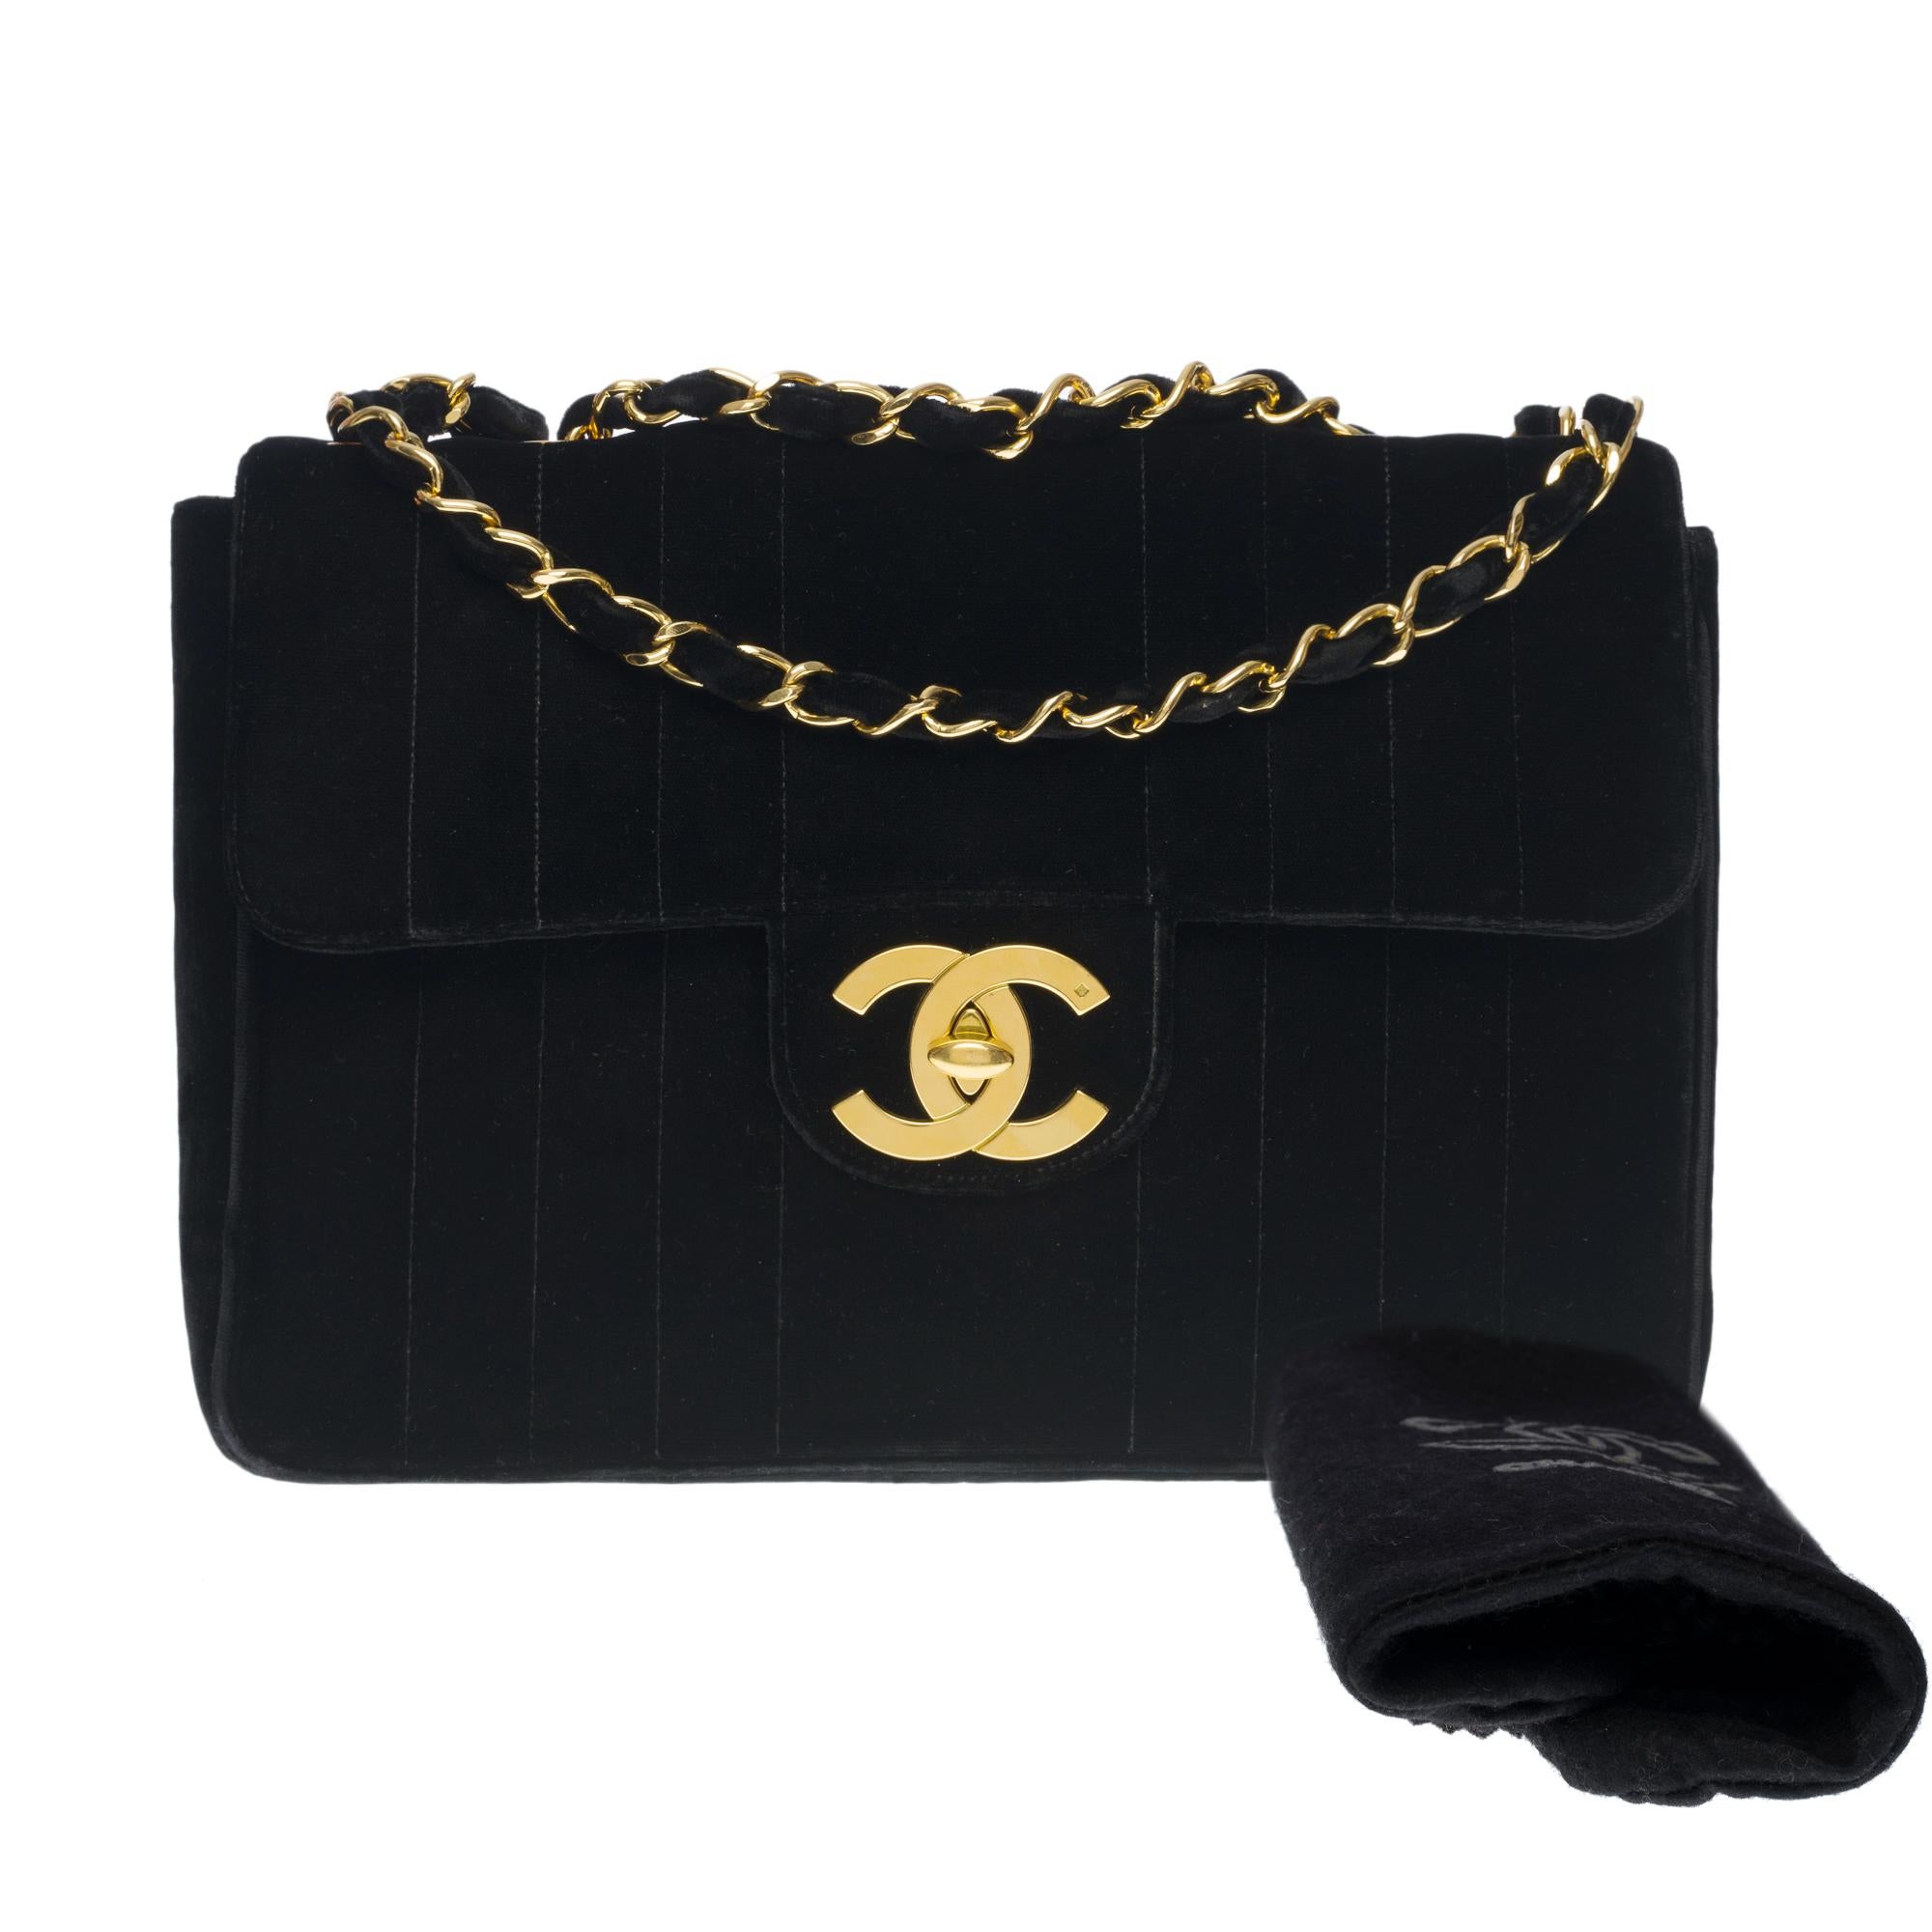 Rare Chanel Timeless Jumbo single flap shoulder bag in black quilted velvet, GHW 3